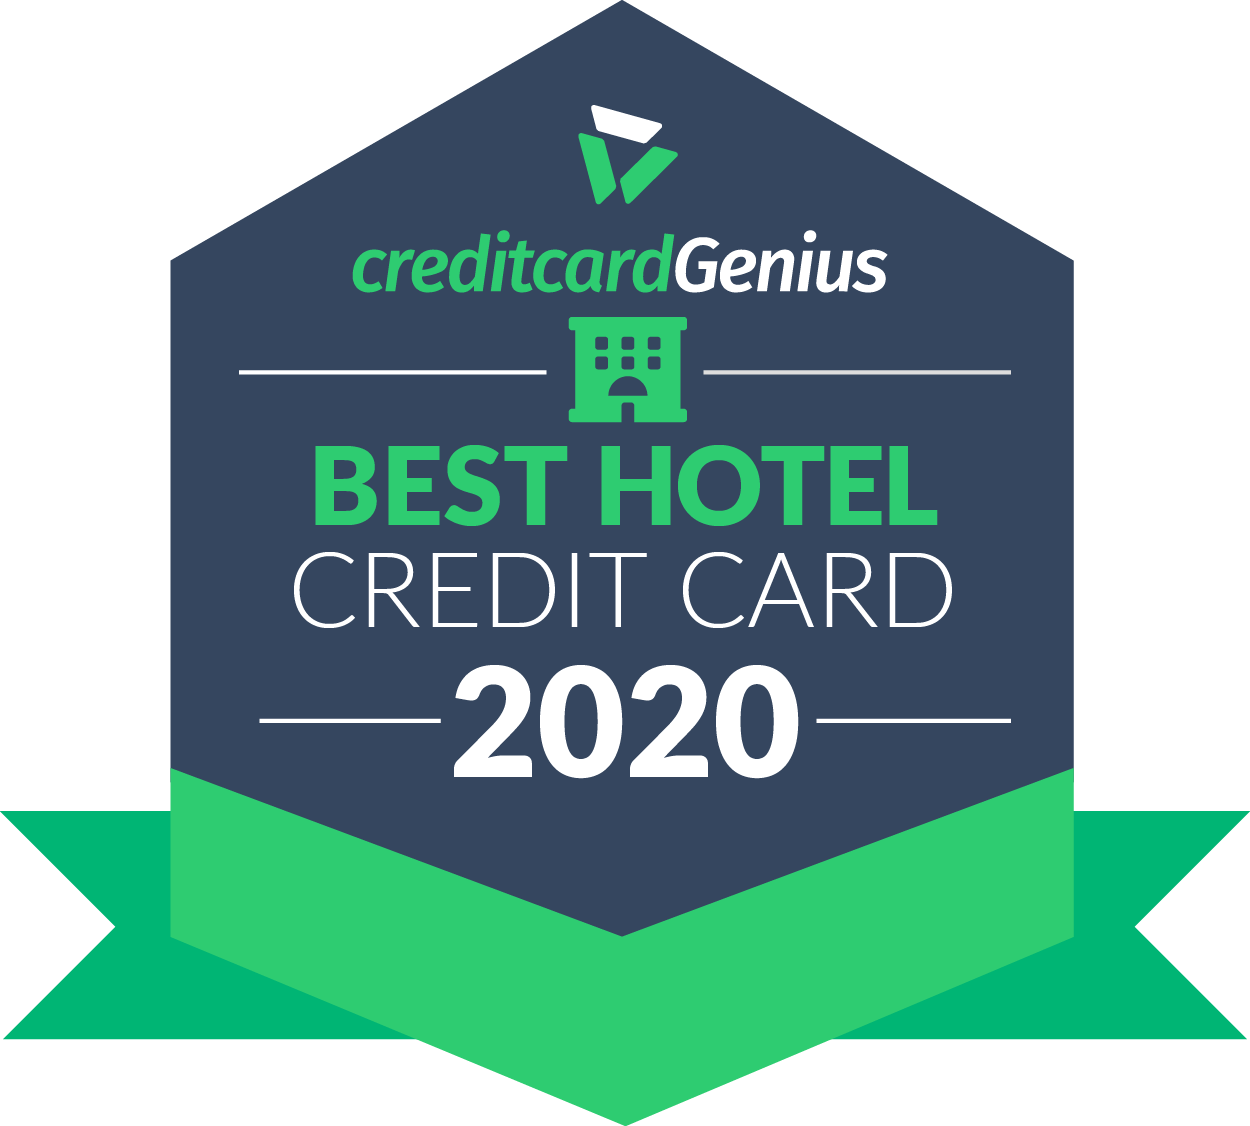 Best Hotel Credit Cards For 2020 | creditcardGenius